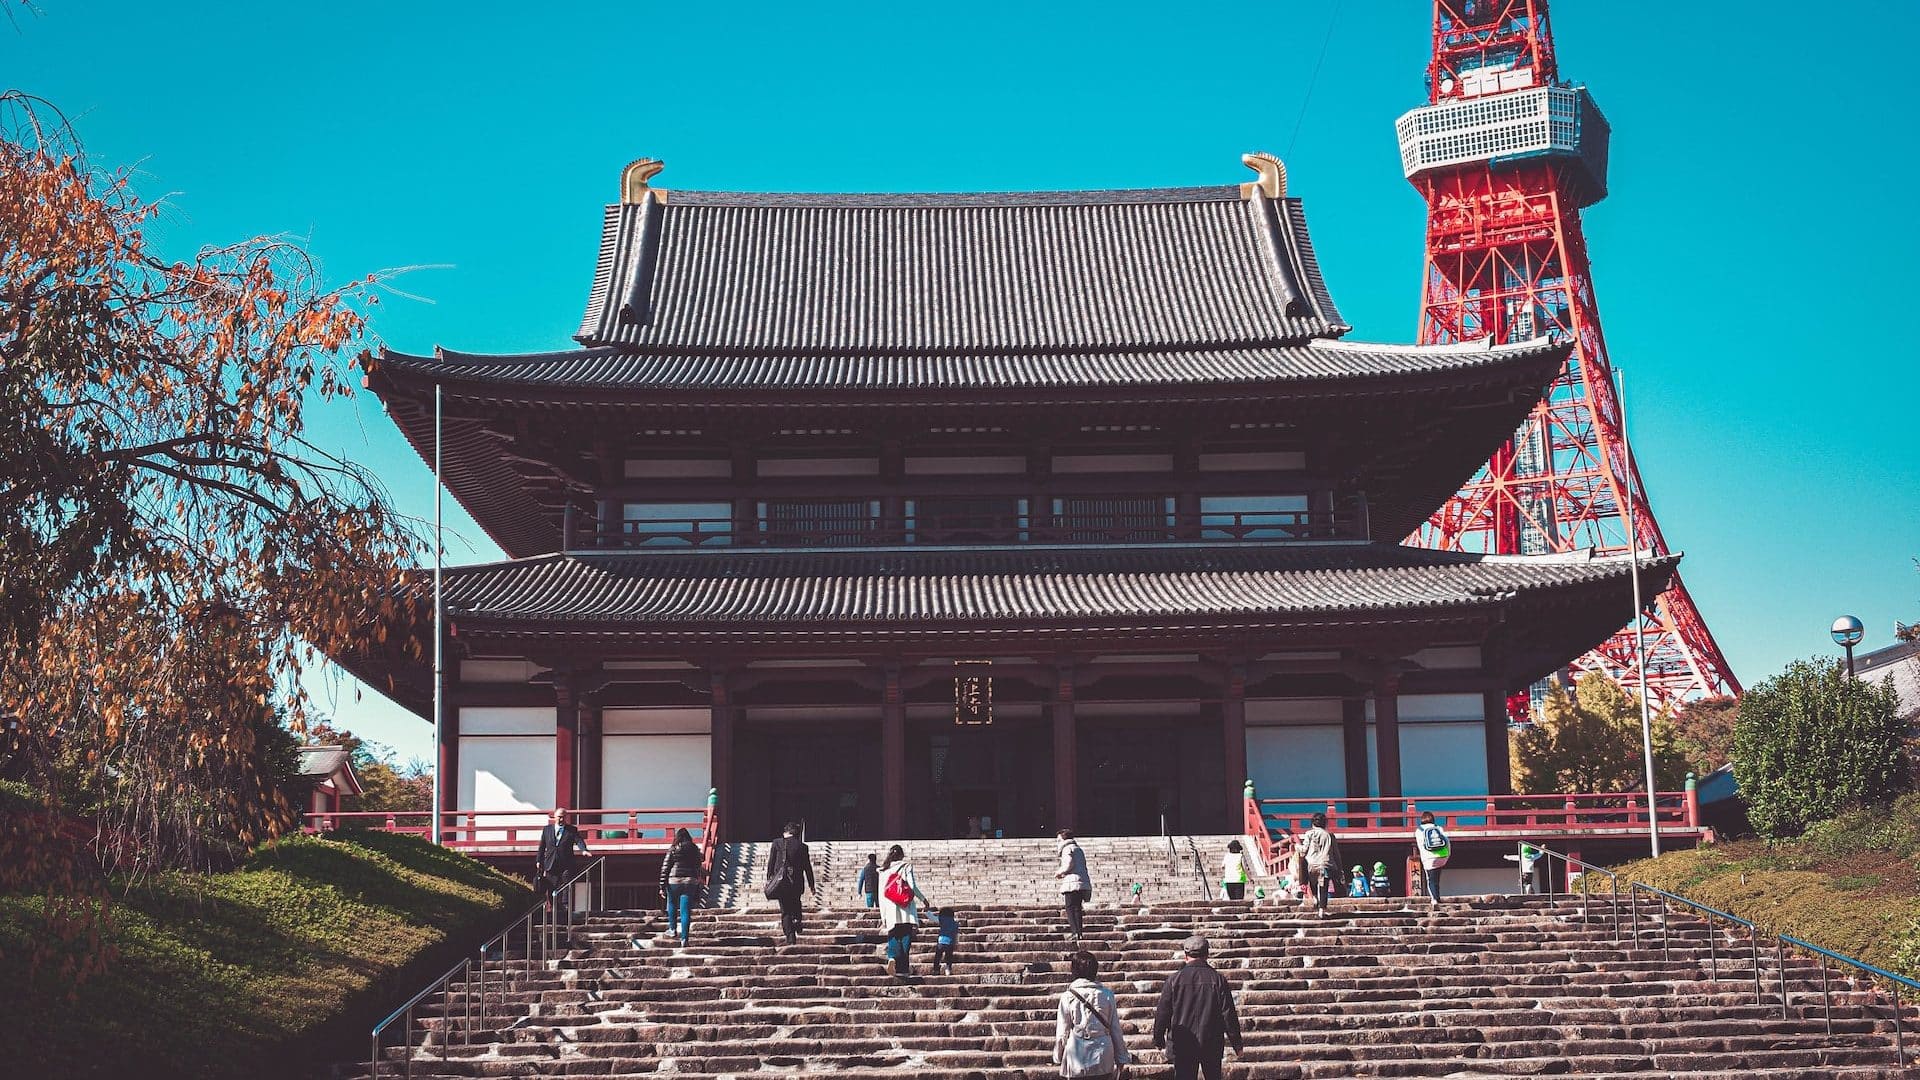 El temple Sengakuji i el temple Zojoji es troben en aquesta zona.